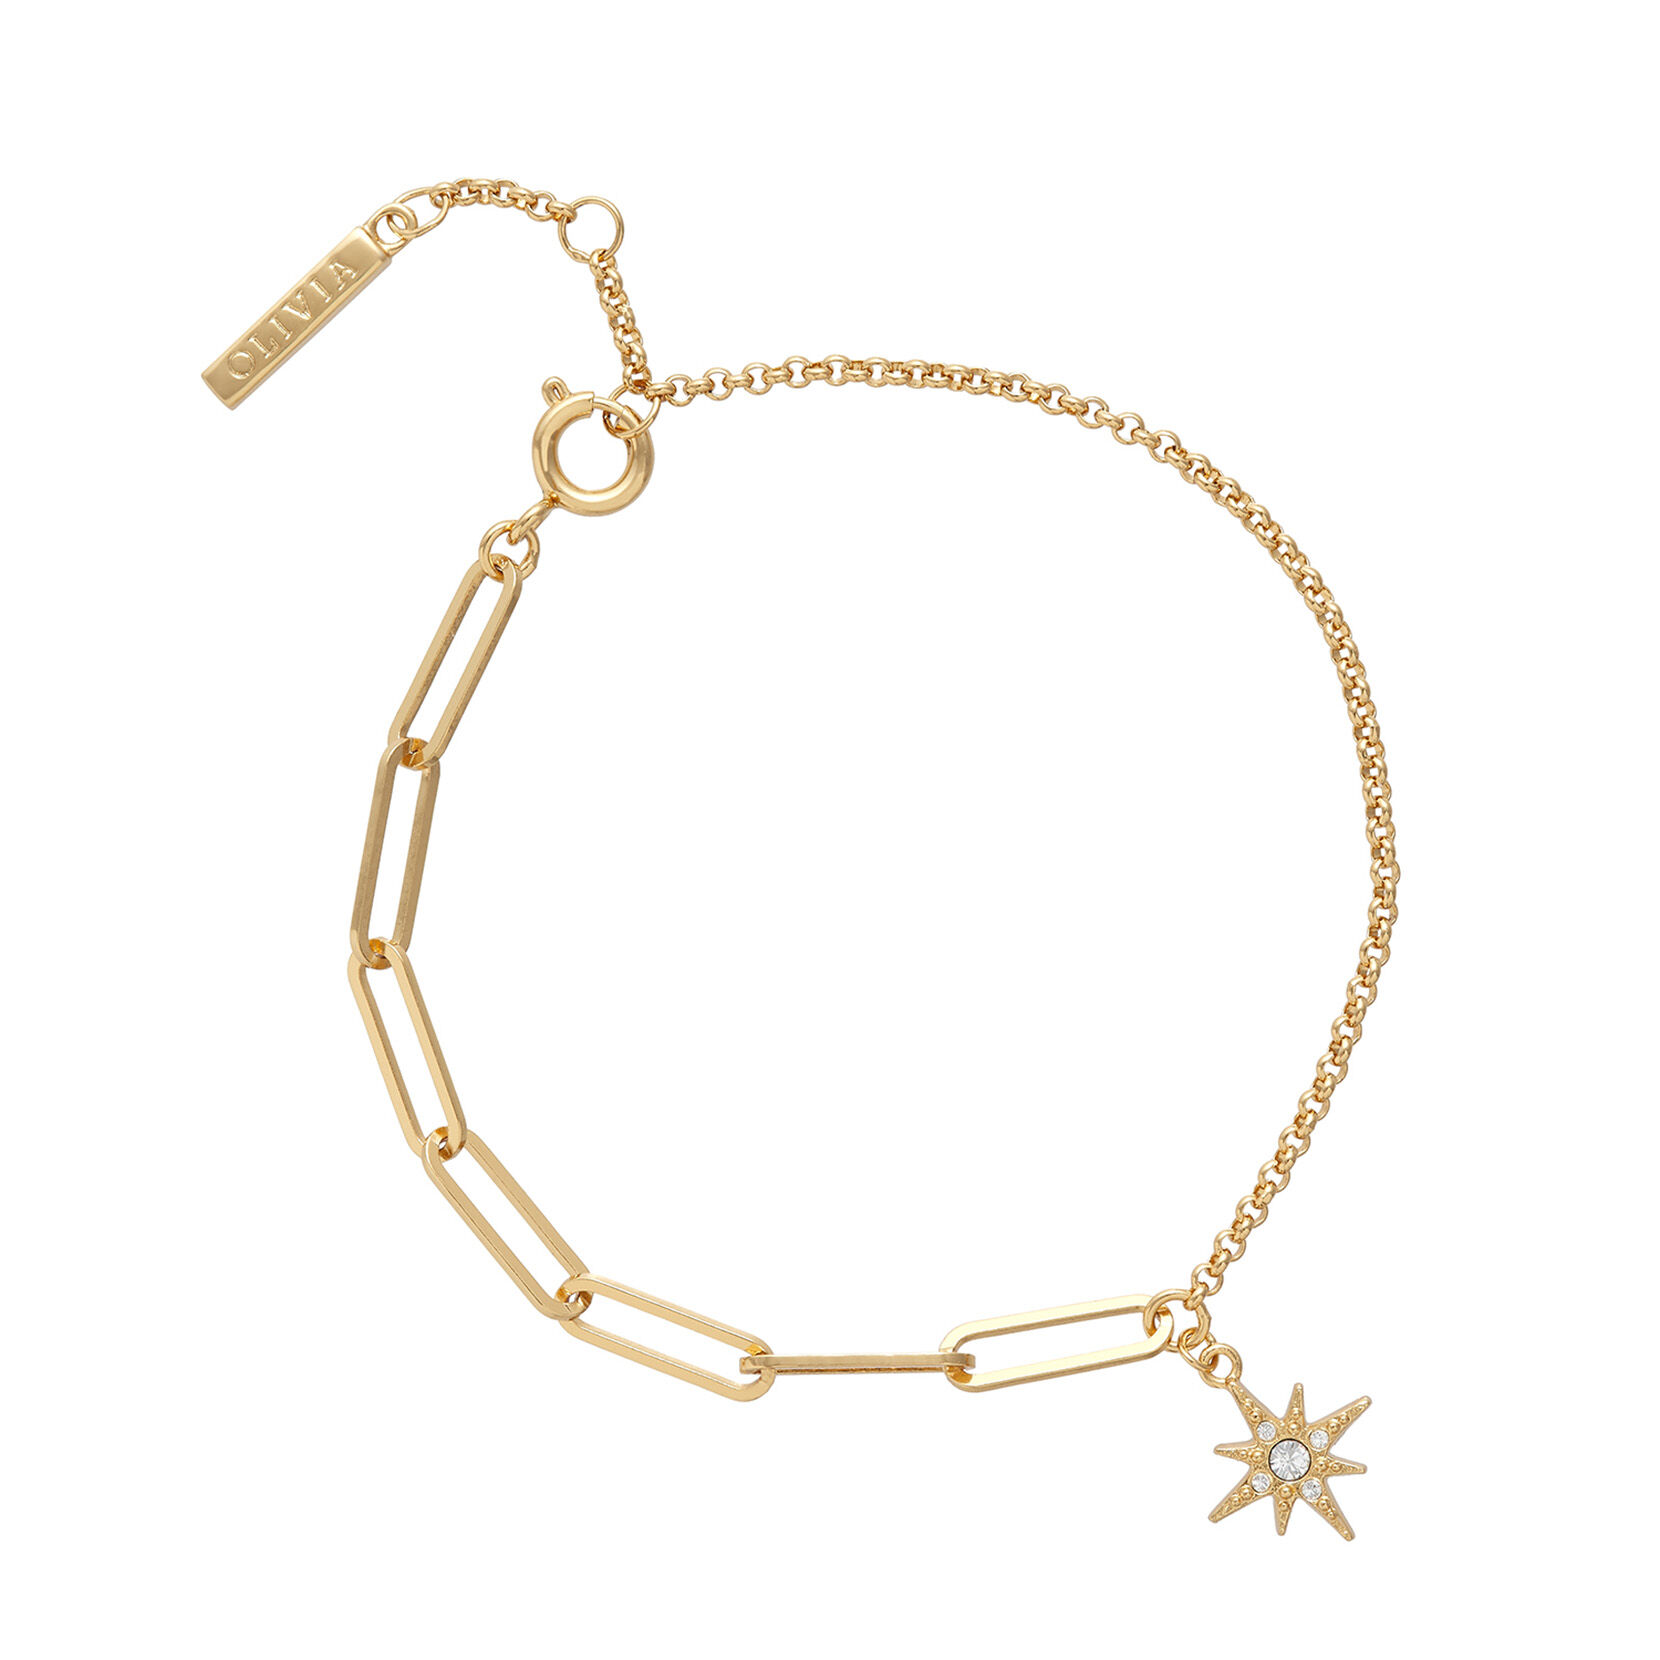 Celestial North Star Mismatch Bracelet Gold